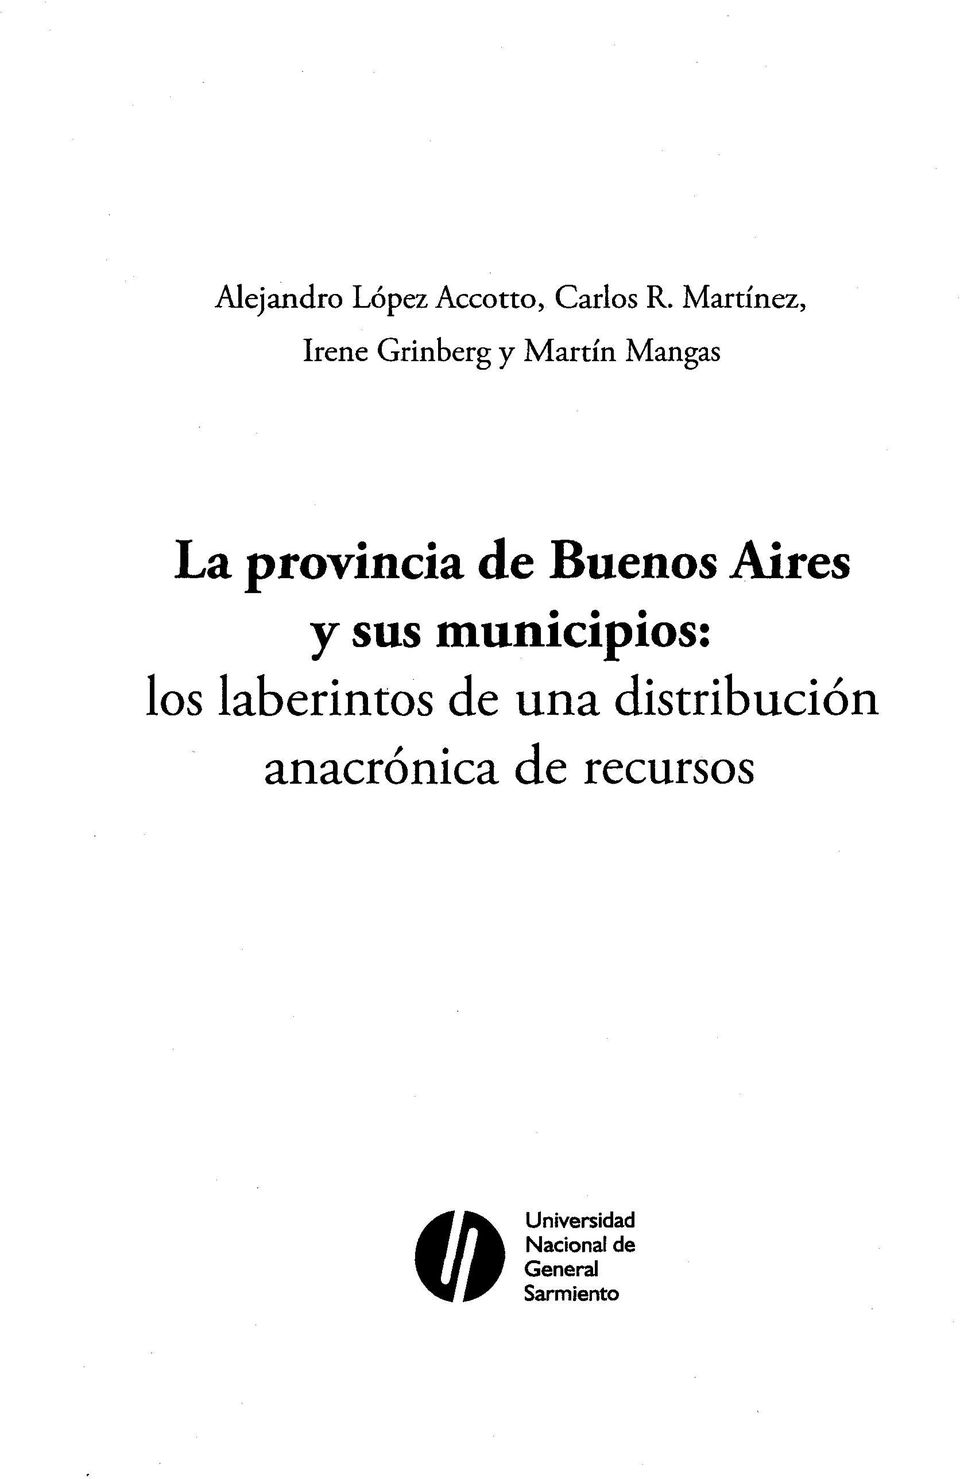 de Buenos Aires y sus municipios: los laberintos de una